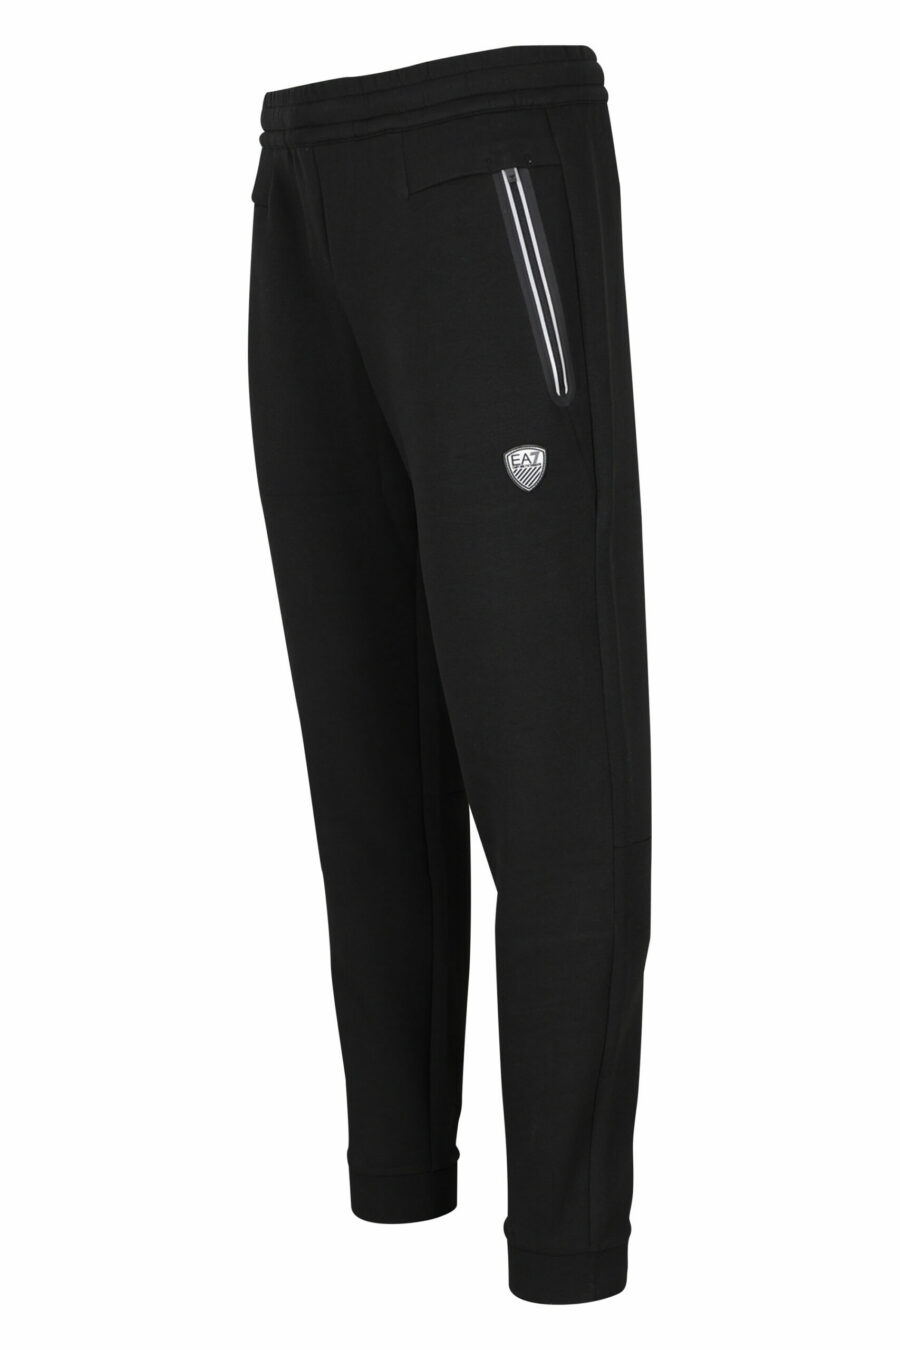 Pantalón de chándal negro con minilogo escudo "lux identity" - 8056787978737 1 scaled